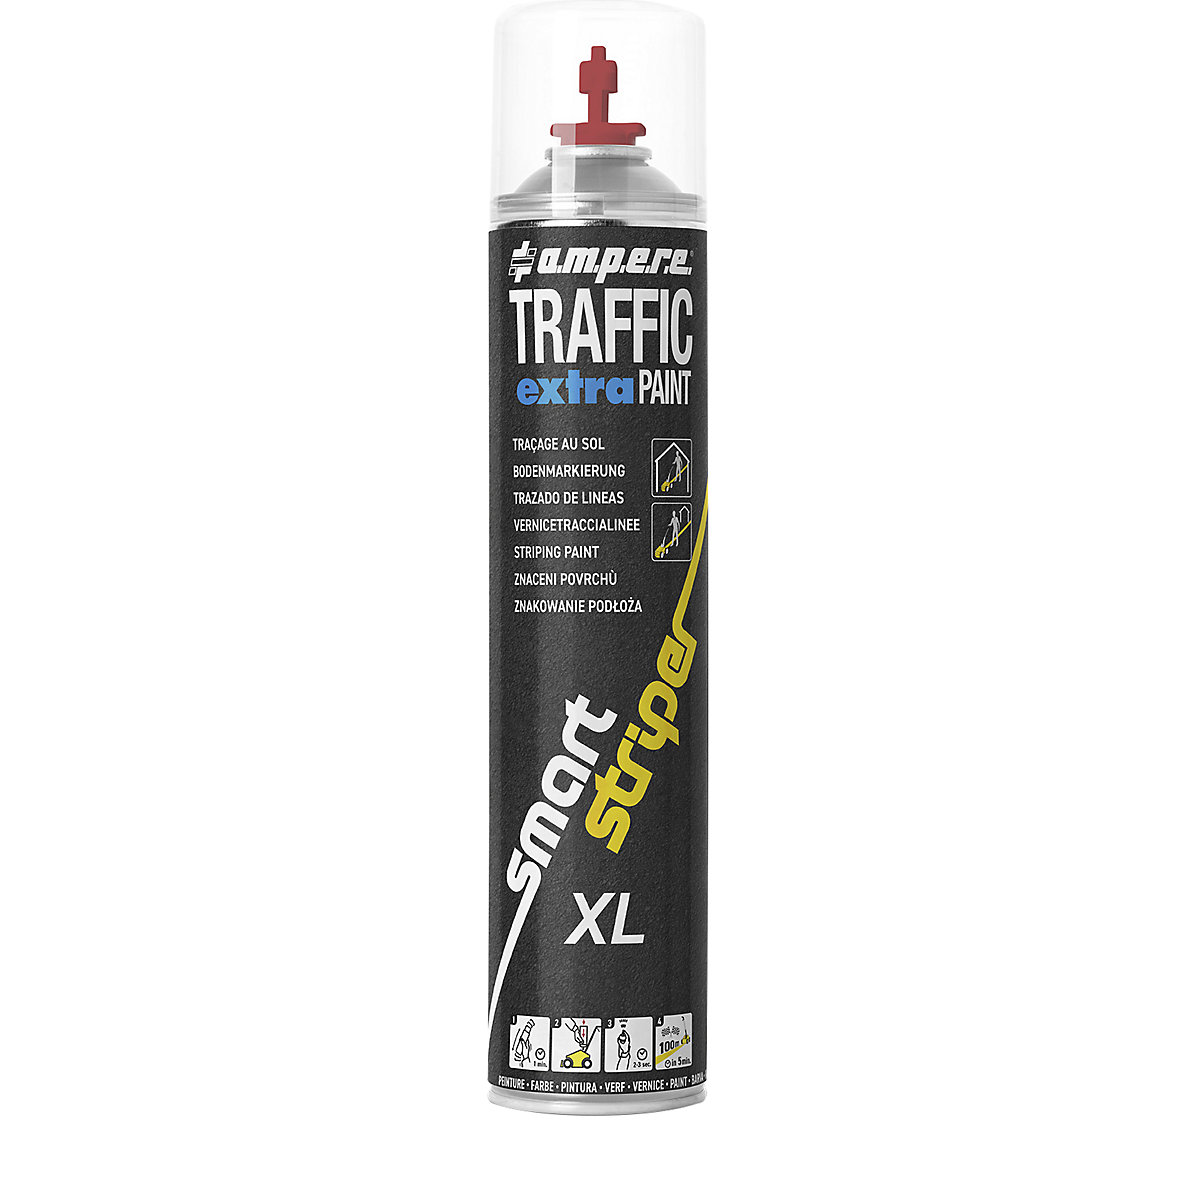 Traffic extra Paint® XL jelölőfesték – Ampere